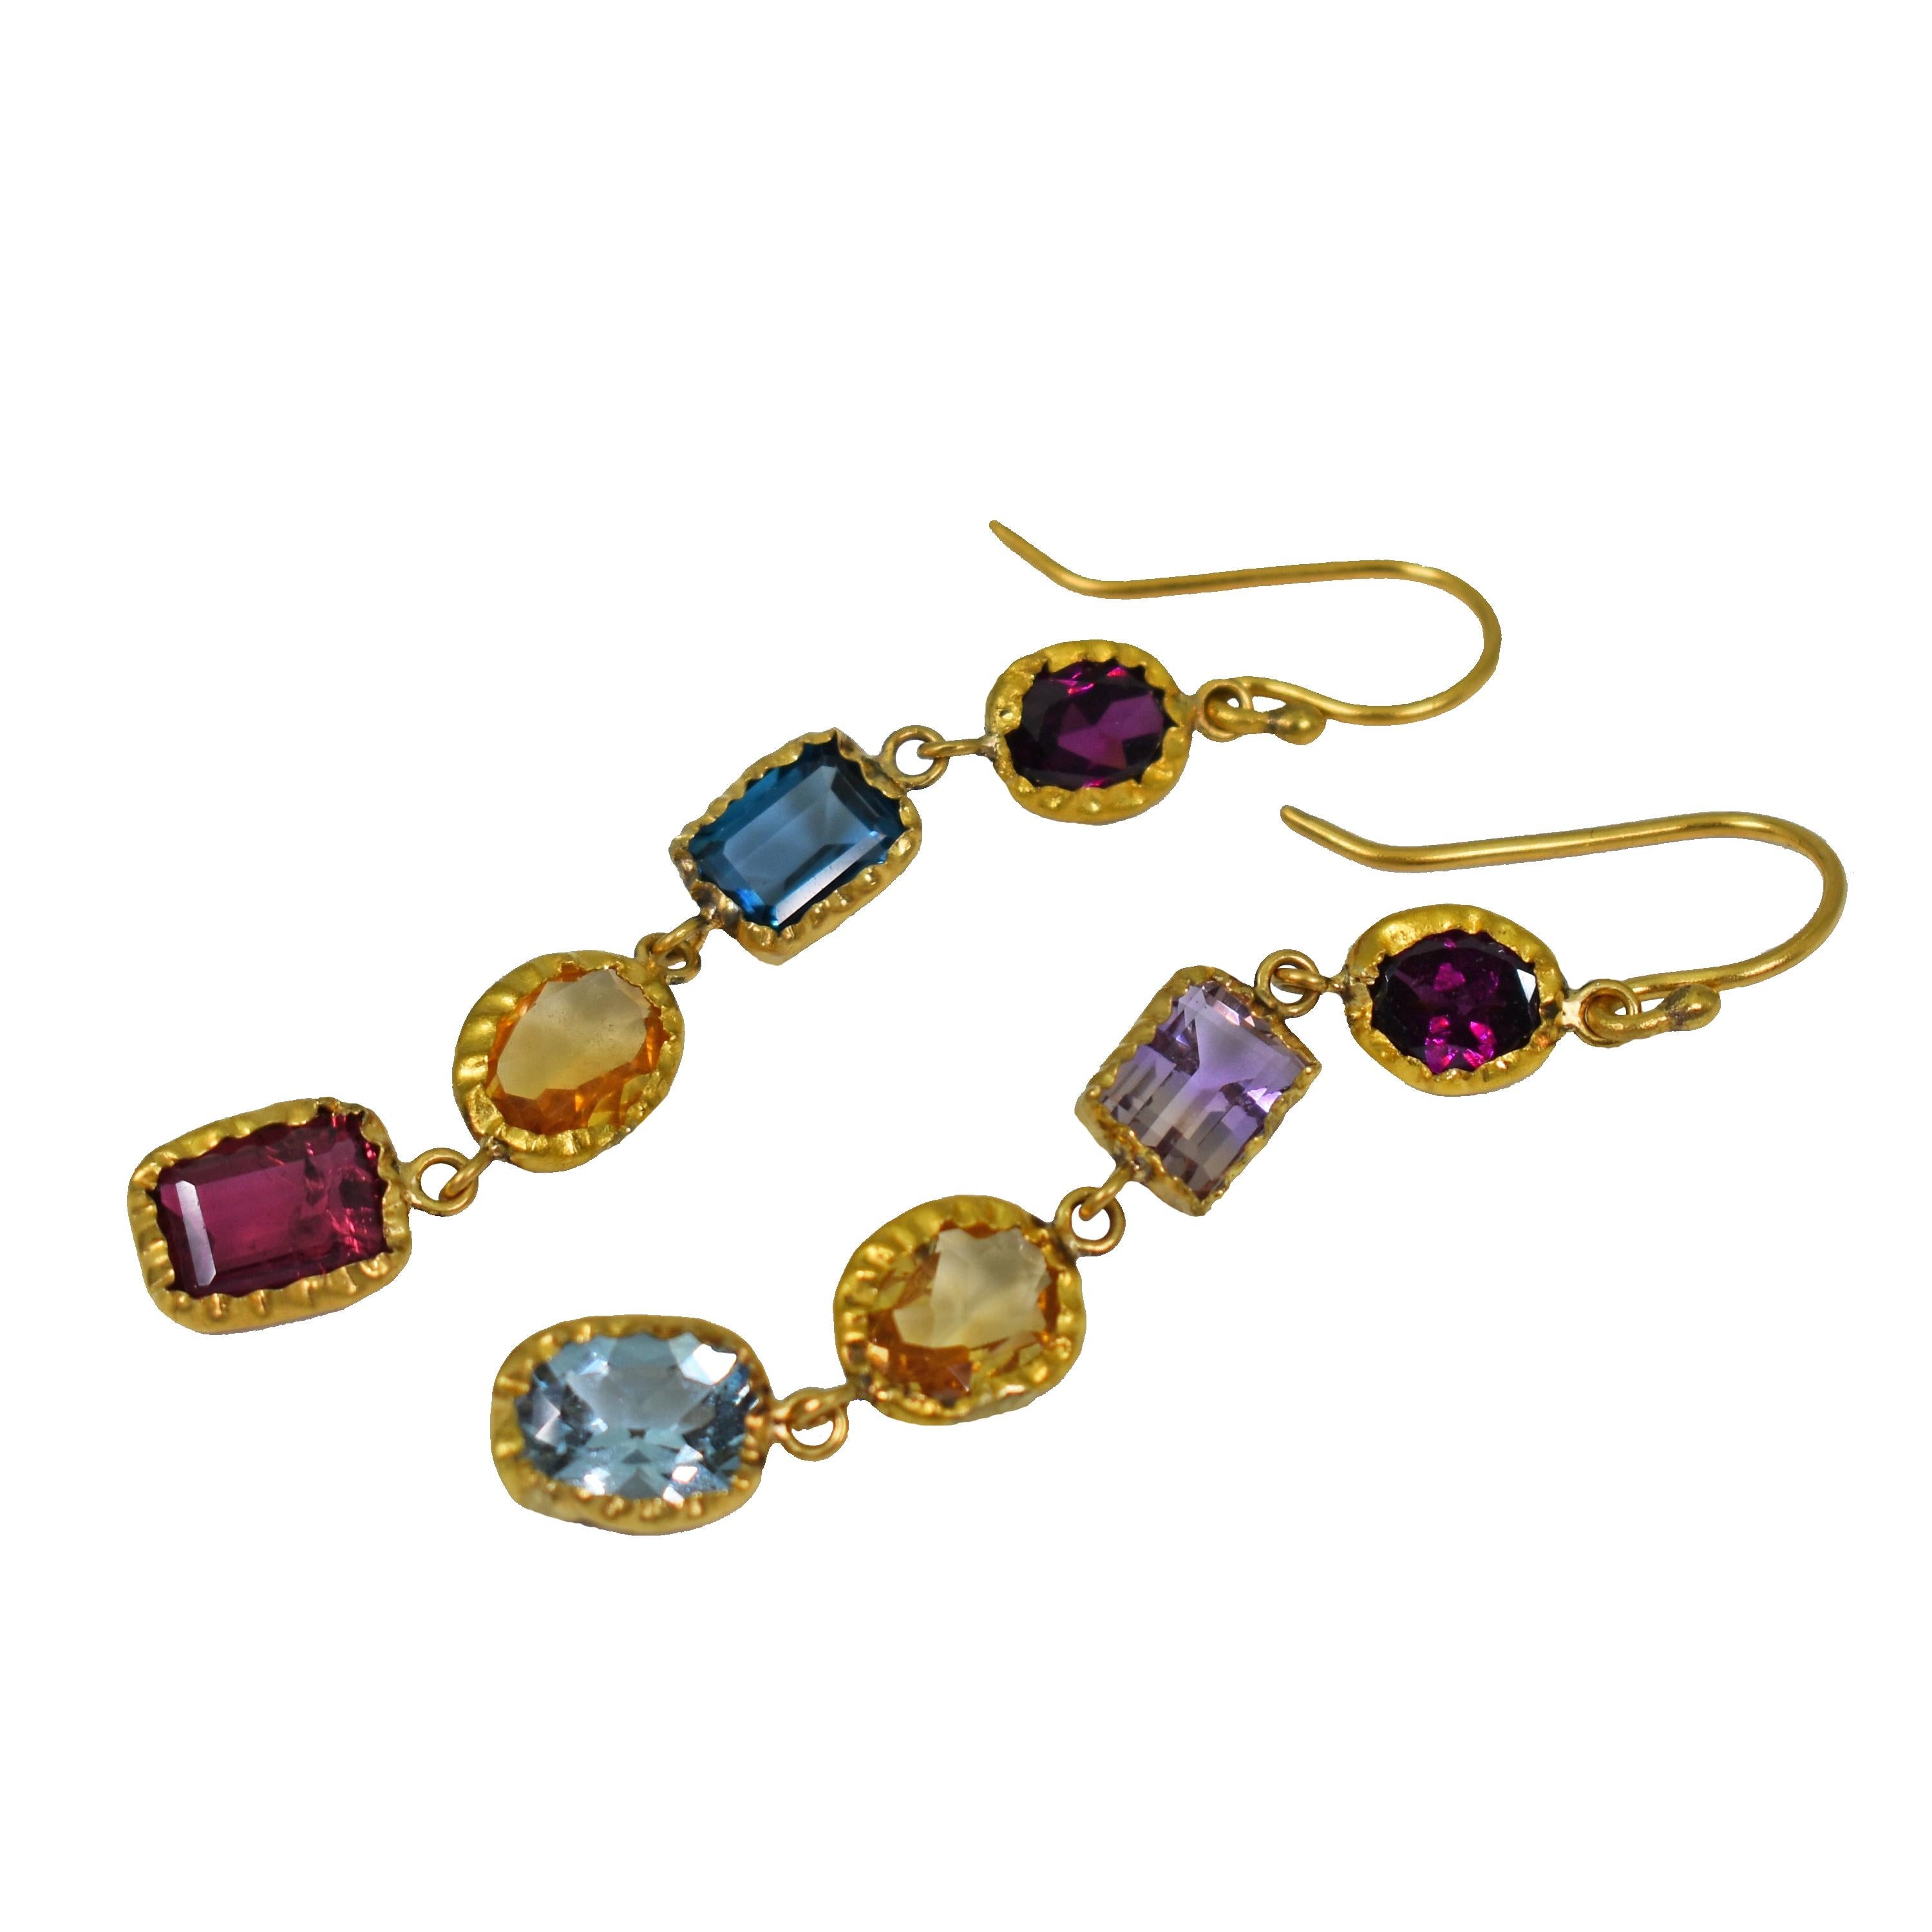 Boucles d'oreilles pendantes asymétriques en or jaune 22k, composées de plusieurs pierres précieuses. Les pierres précieuses comprennent le grenat rhodolite, l'amétrine, la topaze bleue, la citrine, l'aigue-marine et la tourmaline rose. Les boucles